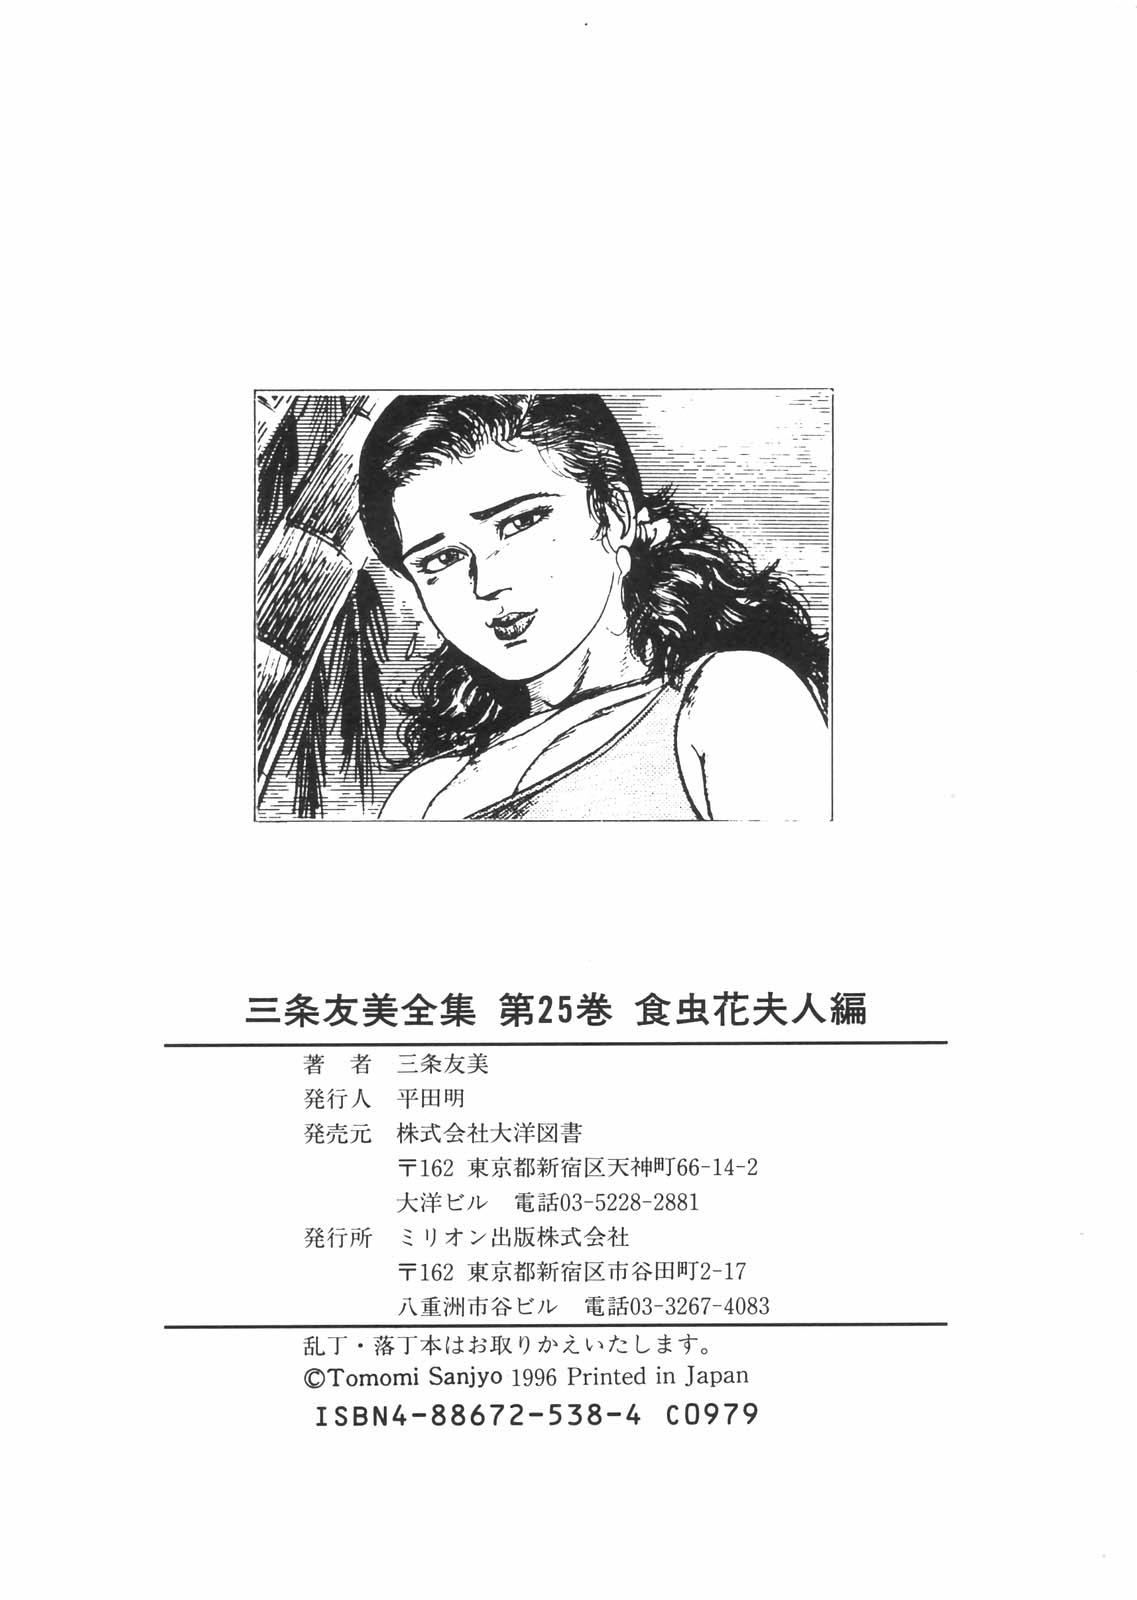 Sanjou Tomomi Zenshuu Vol. 25 - Shokuchuuka Fujin Hen 192